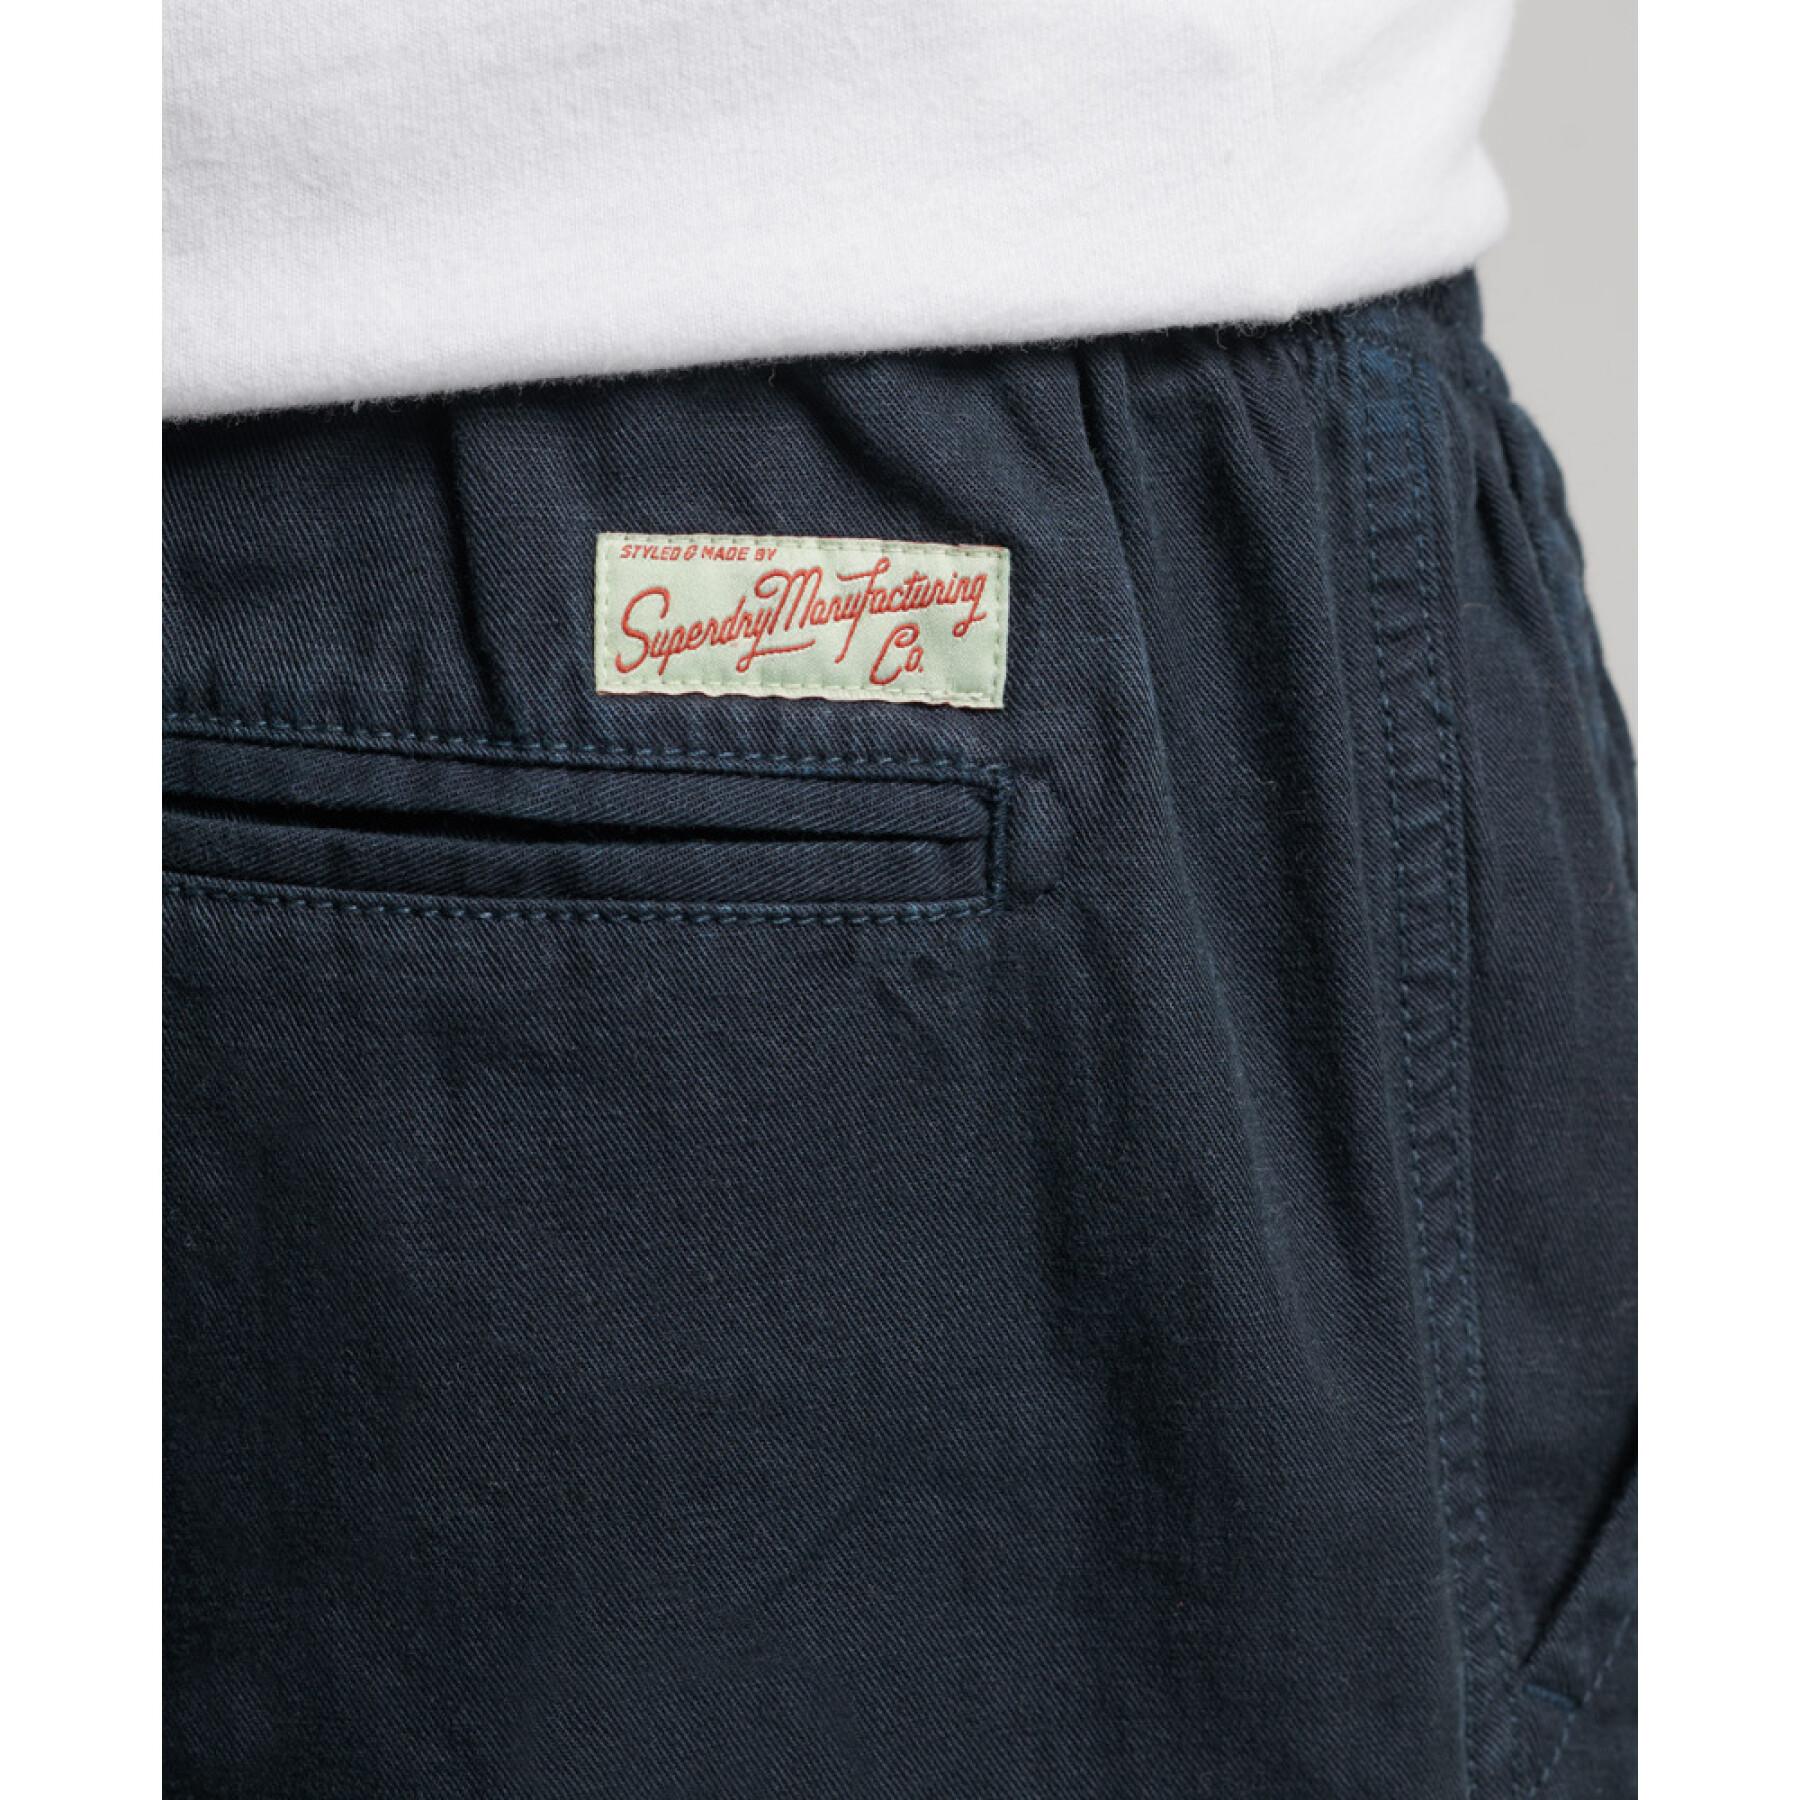 Overgeverfde shorts Superdry Vintage